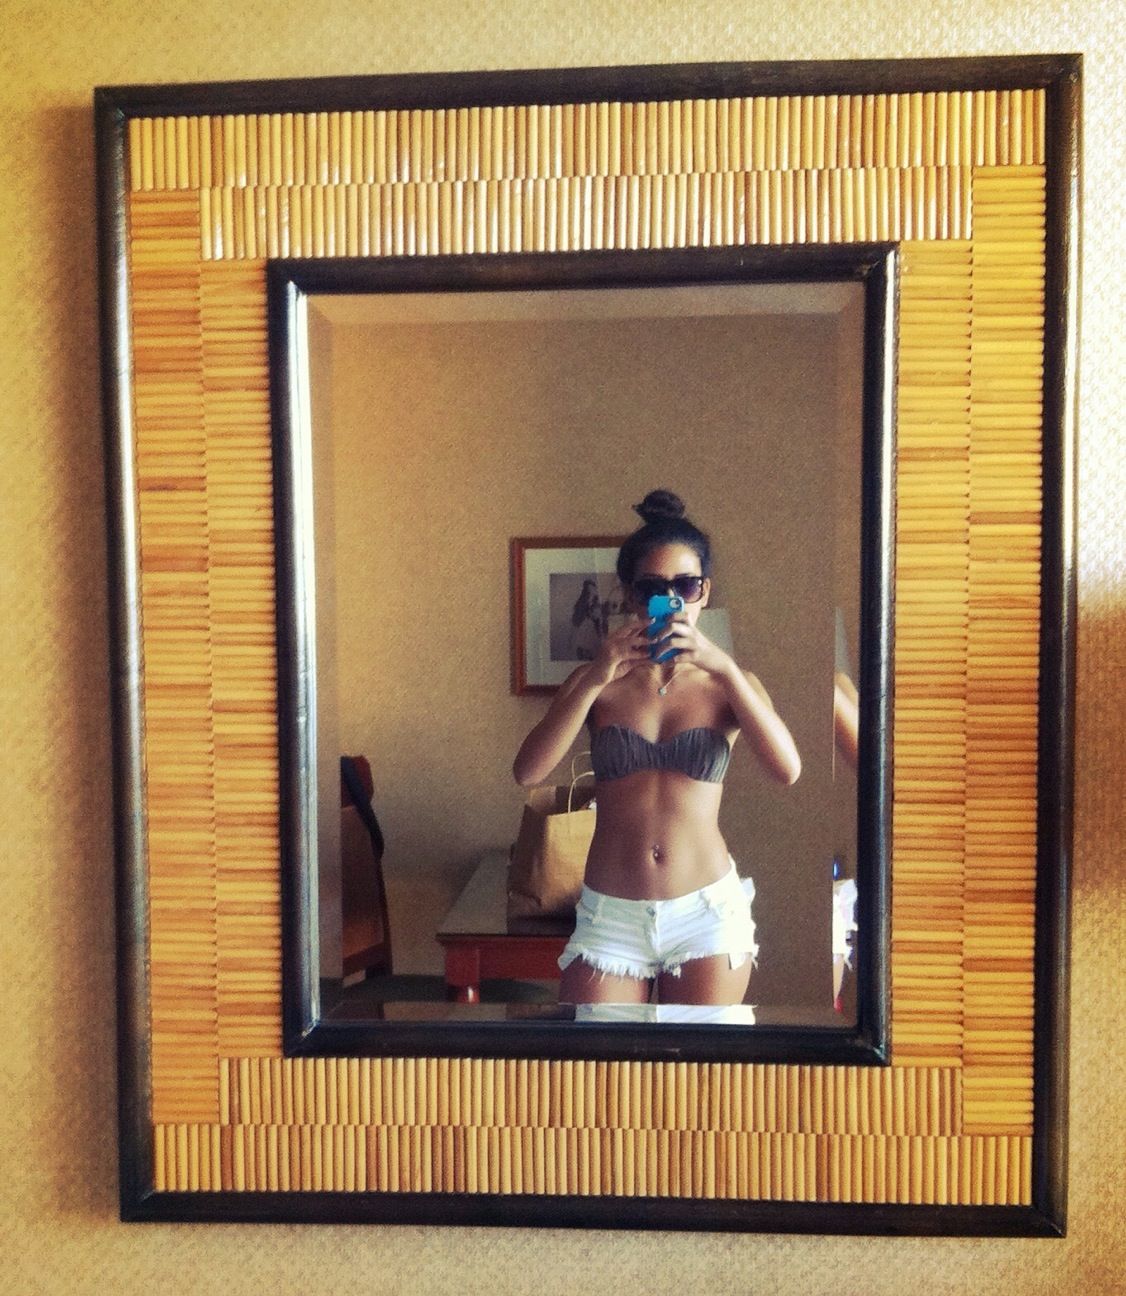 Necessary hotel mirror selfie